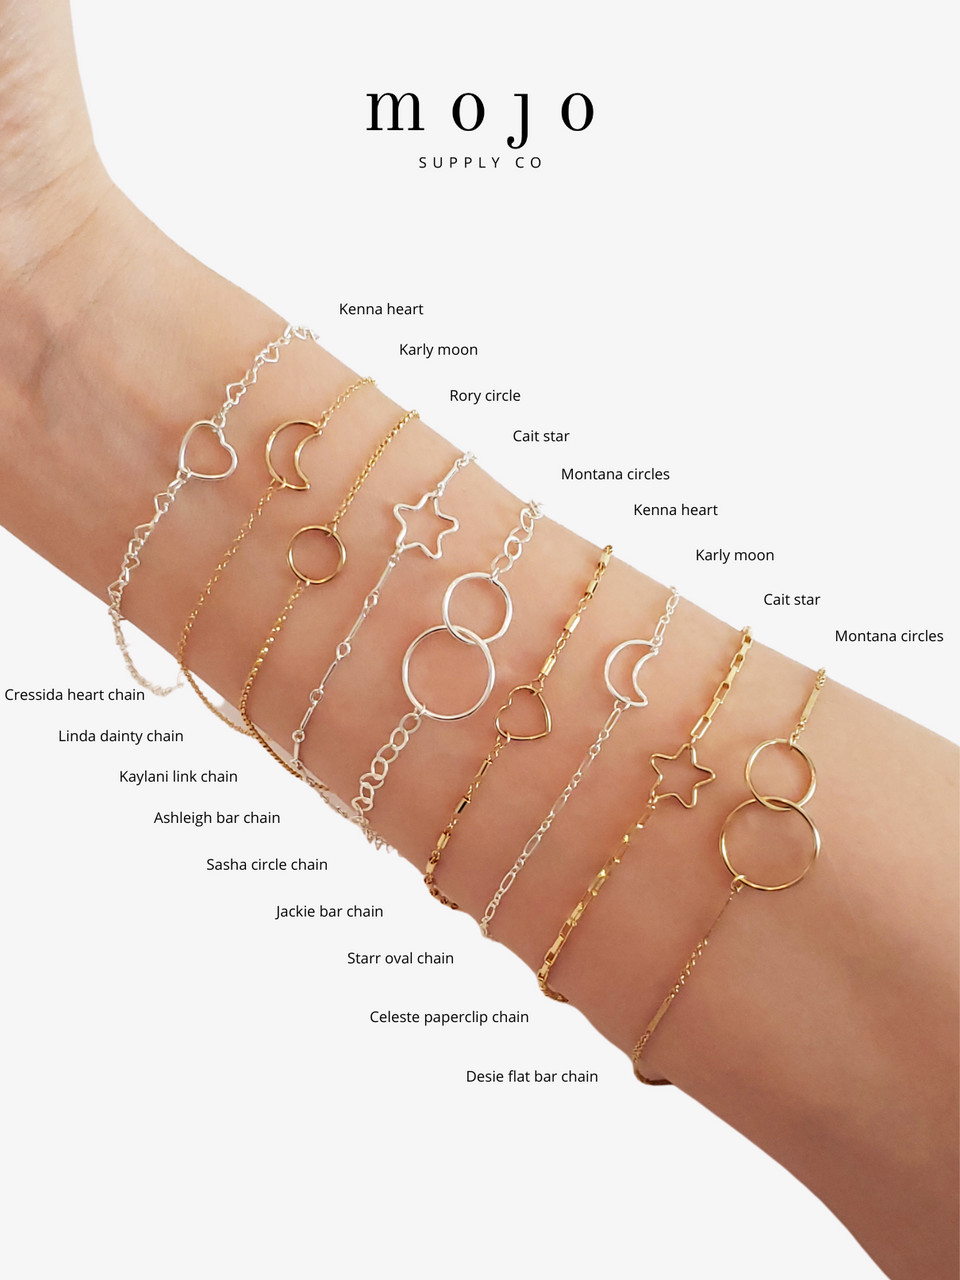 Permanent Jewelry 14K Goldfill Chain Bracelet - Heart Link